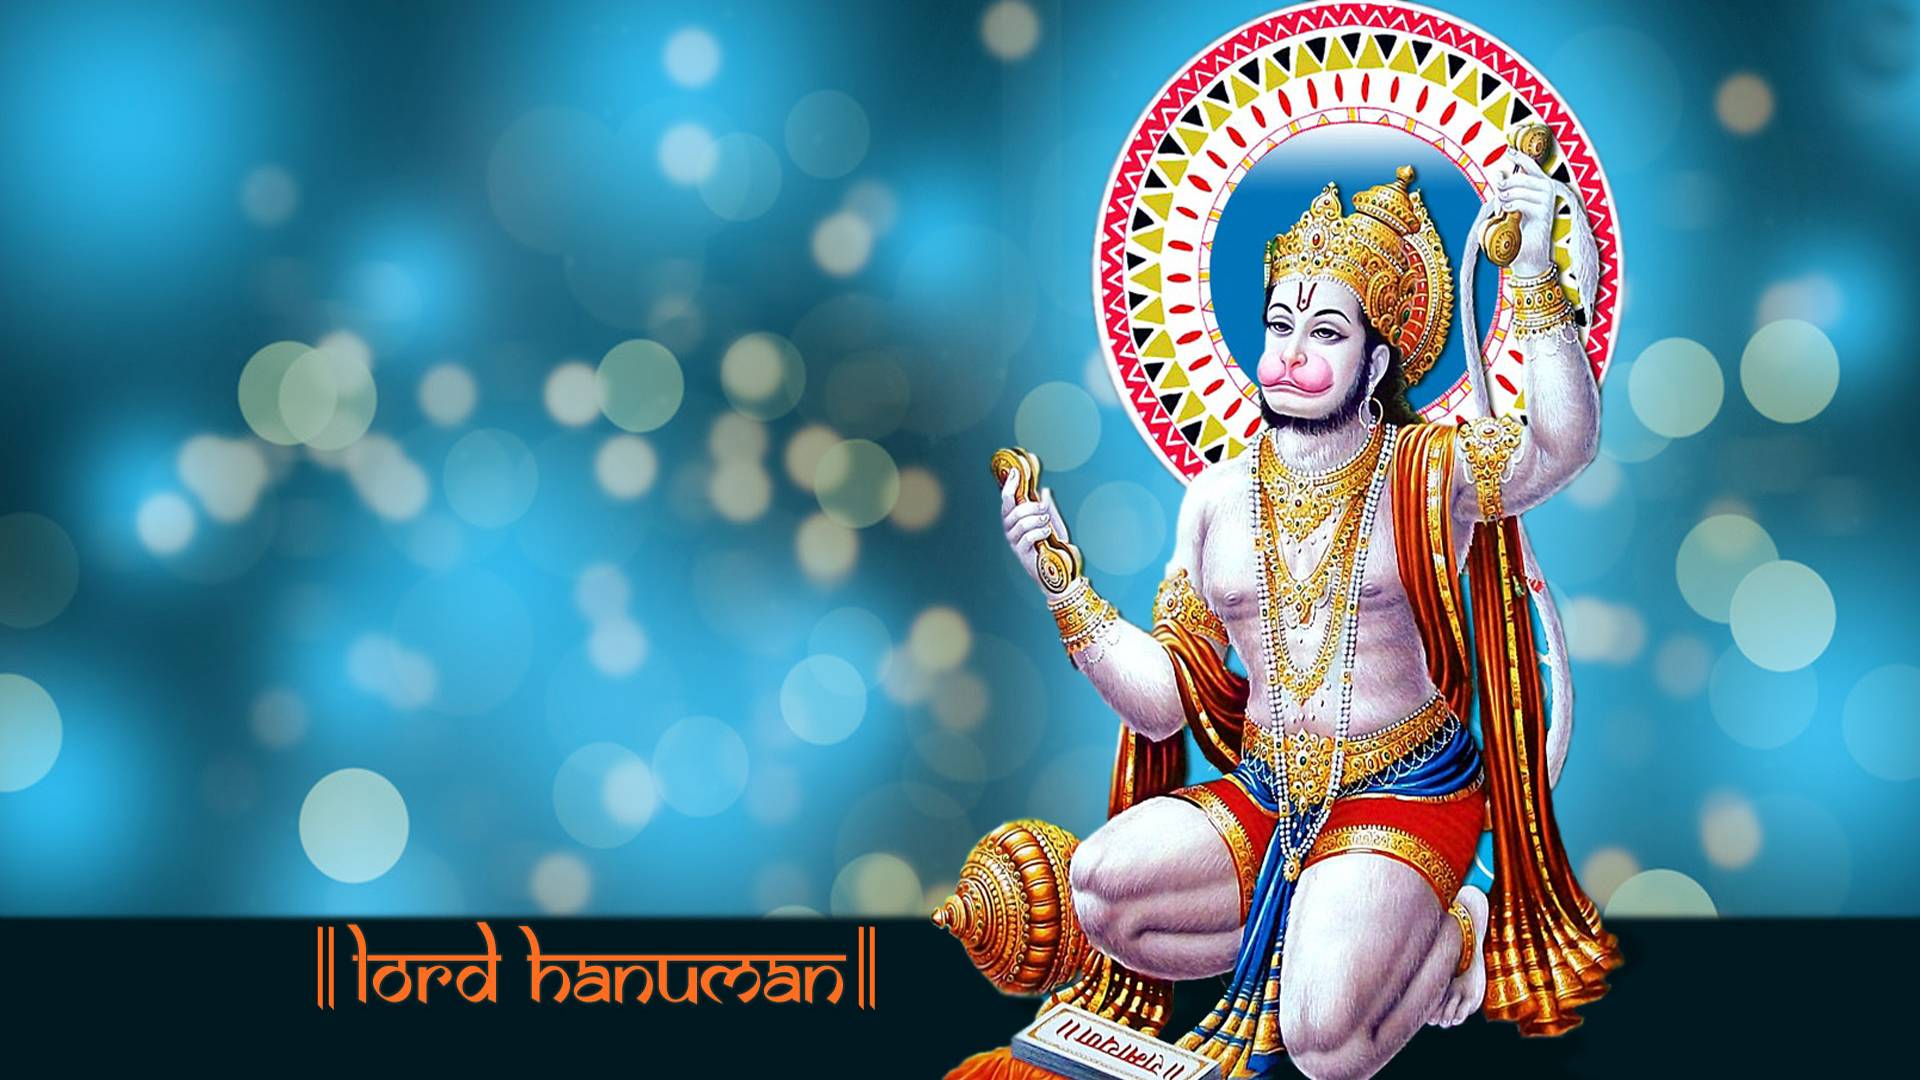 Hanuman ji Images and Hanuman ji HD Wallpapers